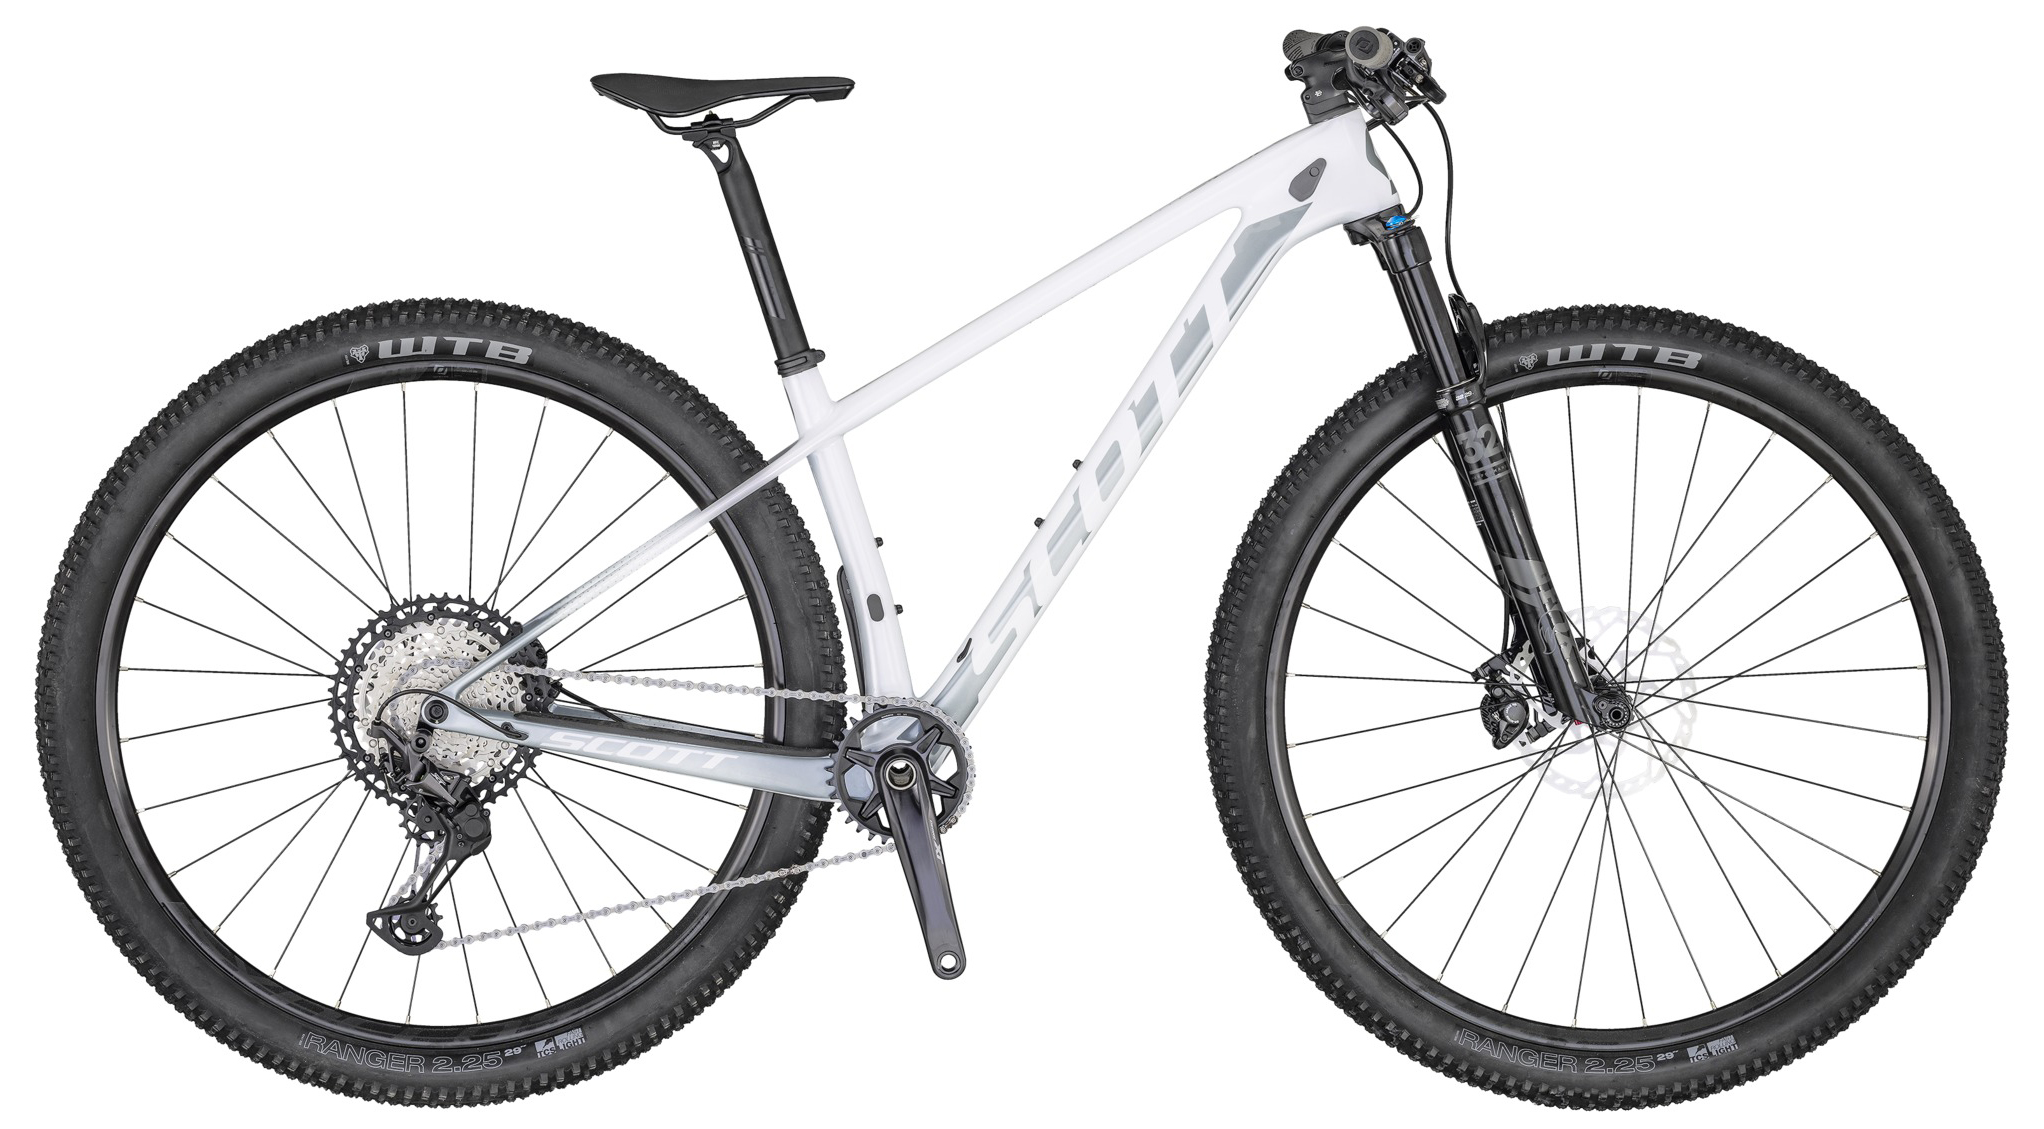  Отзывы о Горном велосипеде Scott Contessa Scale 910 2020